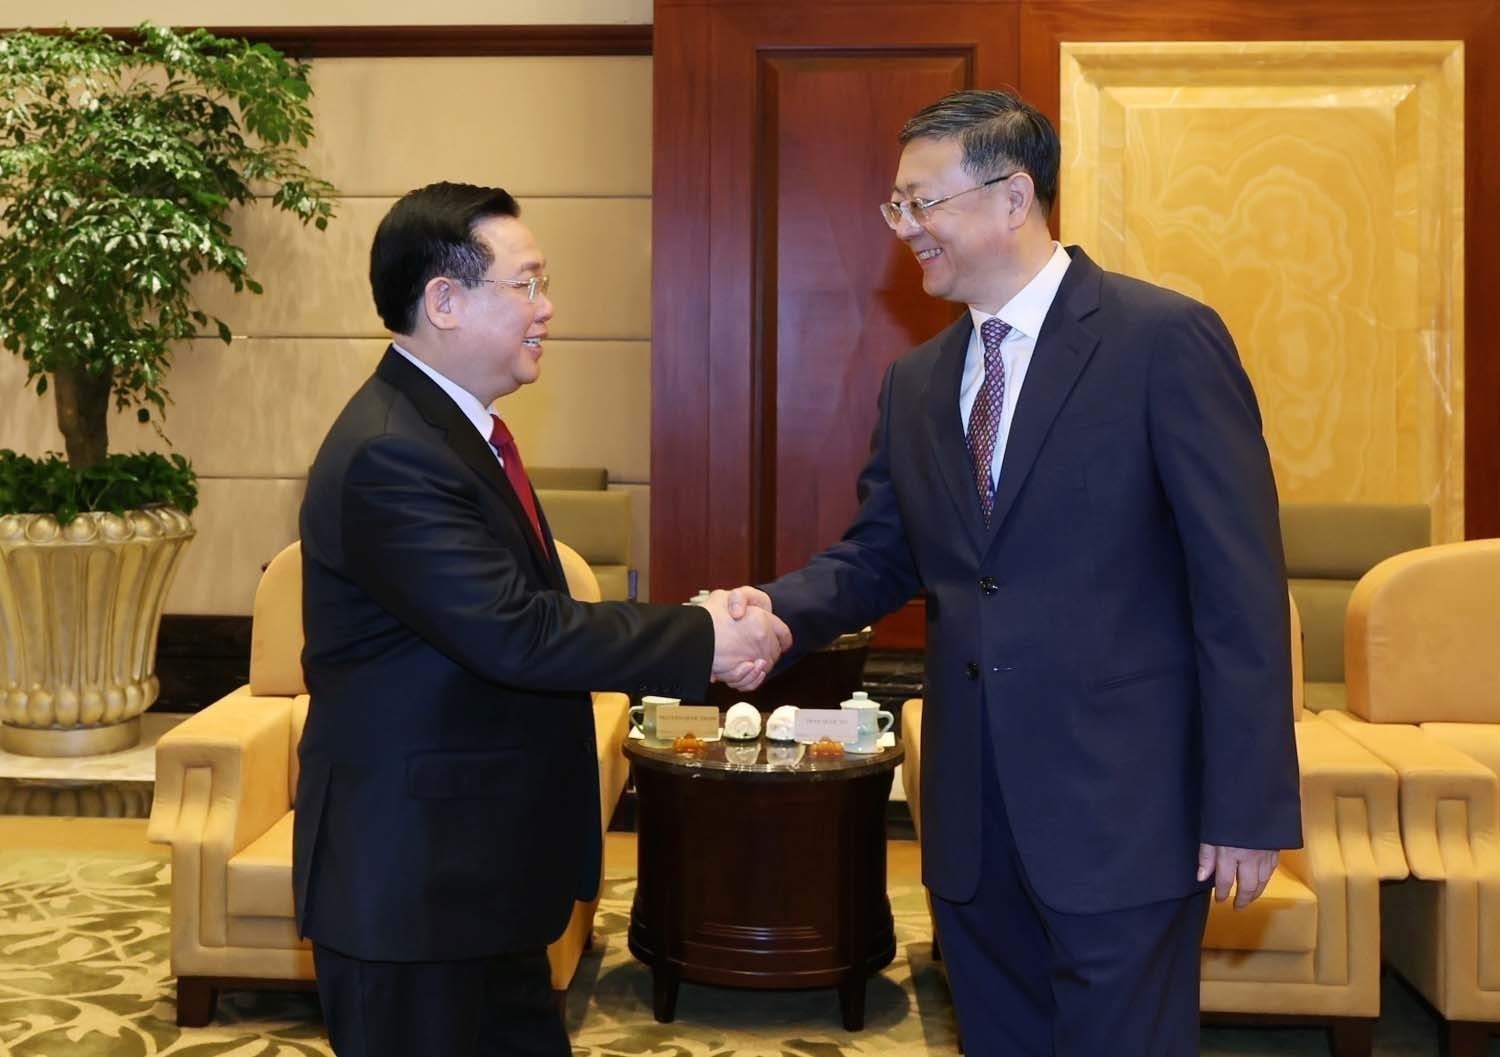 Chủ tịch Quốc hội Vương Đình Huệ thăm chính thức nước Cộng hòa Nhân dân Trung Hoa -0